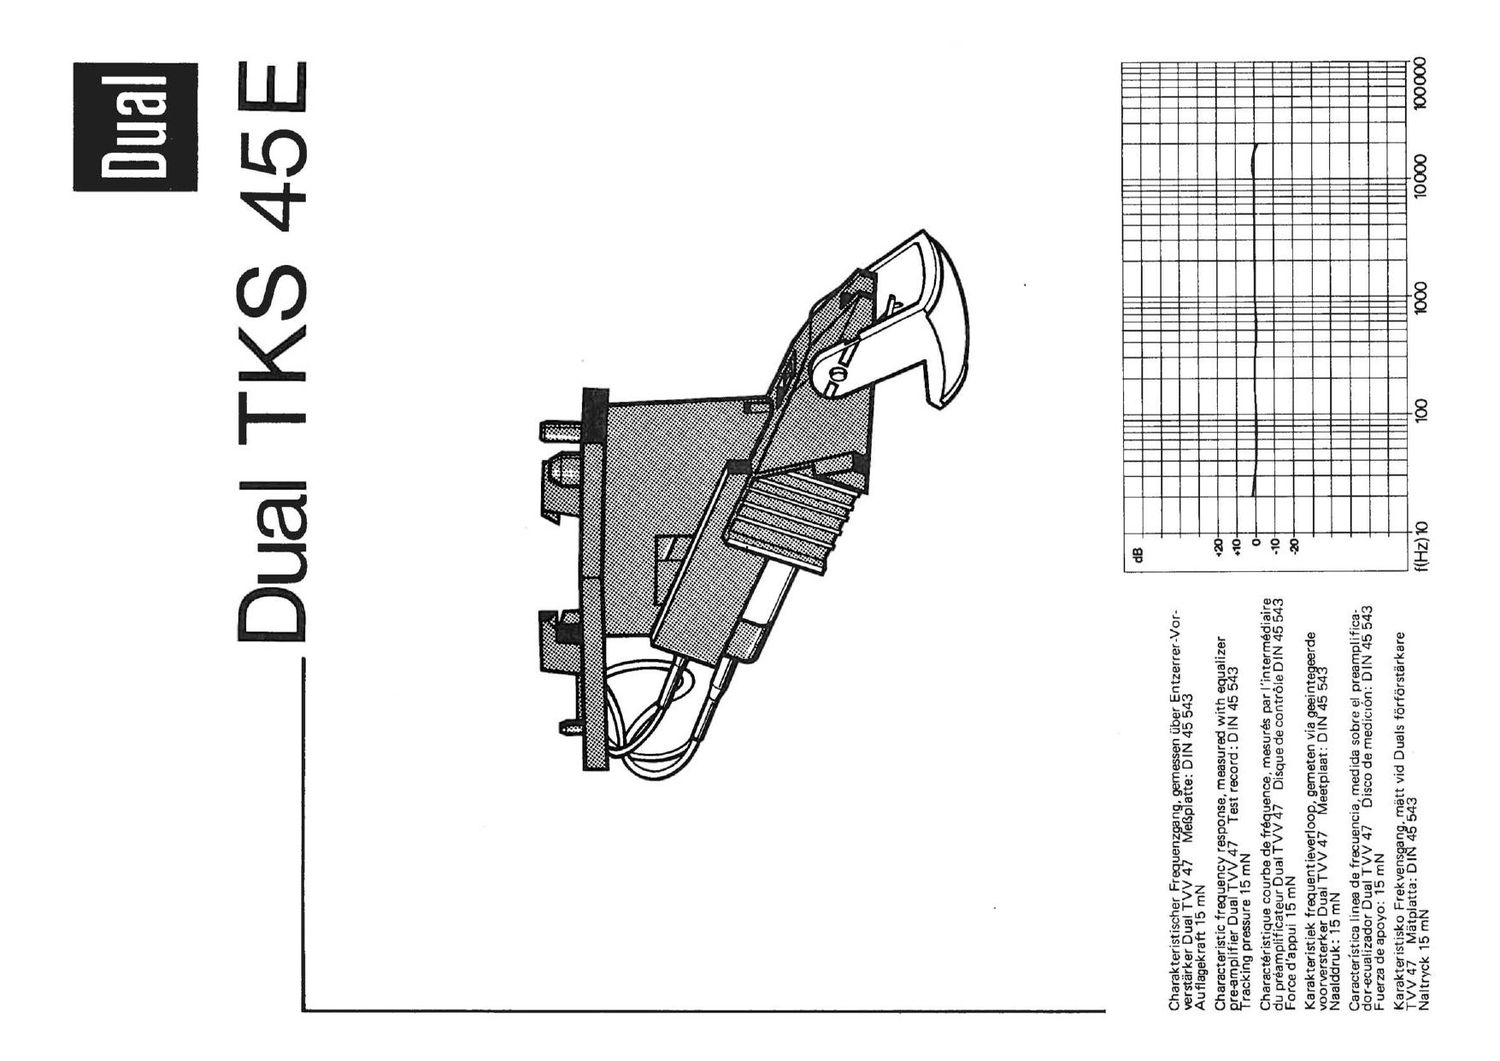 Dual TKS 45E Owners Manual